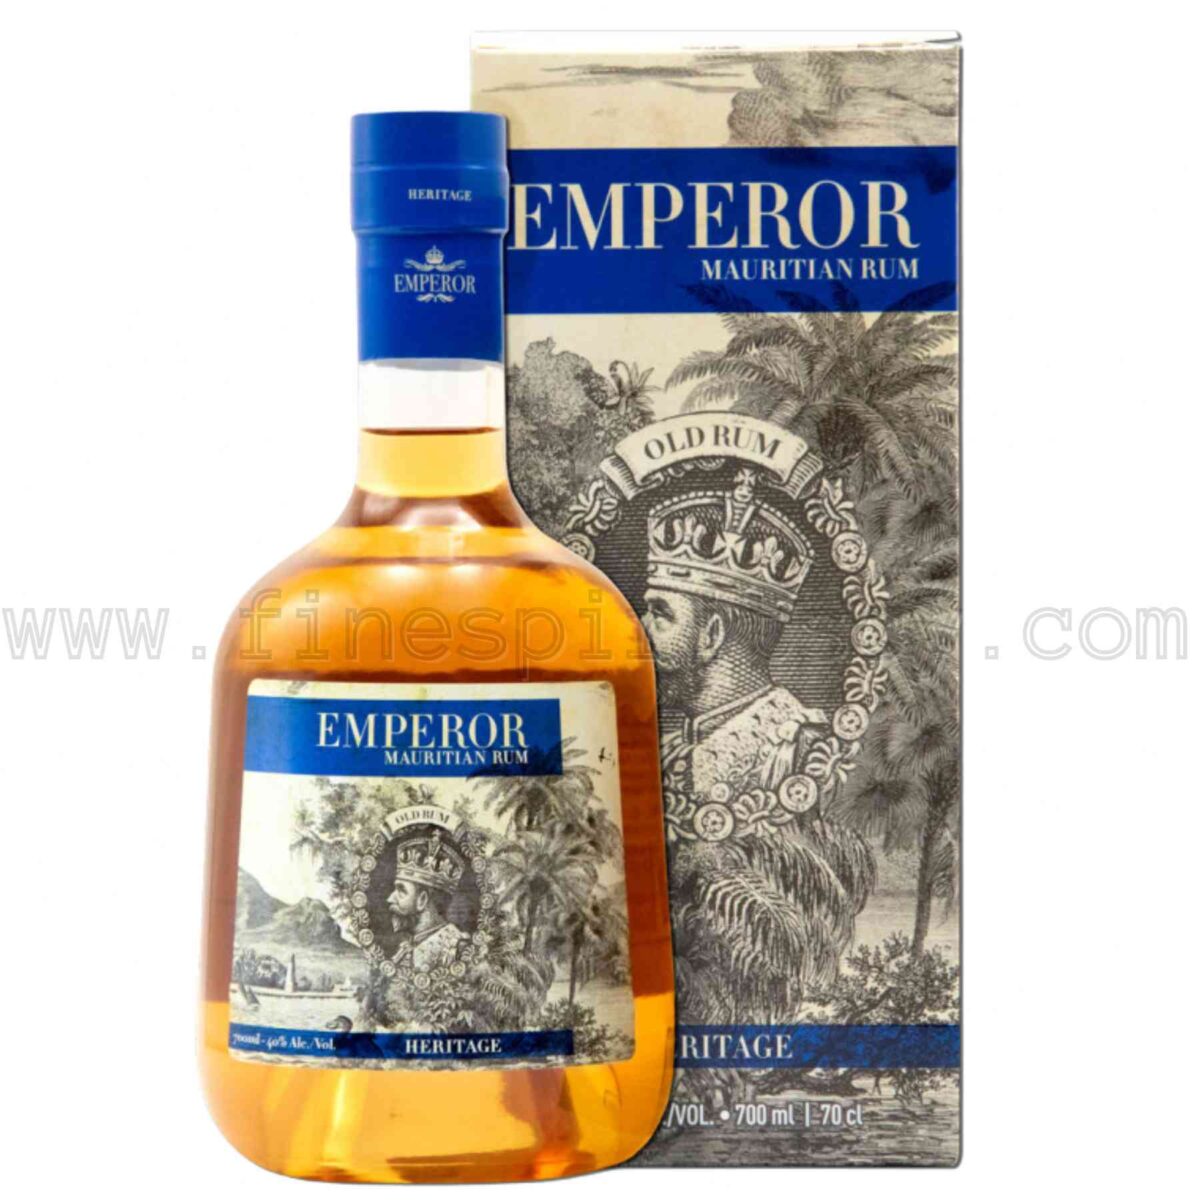 Emperor Heritage Mauritian Rum 700ml 70cl 0.7L